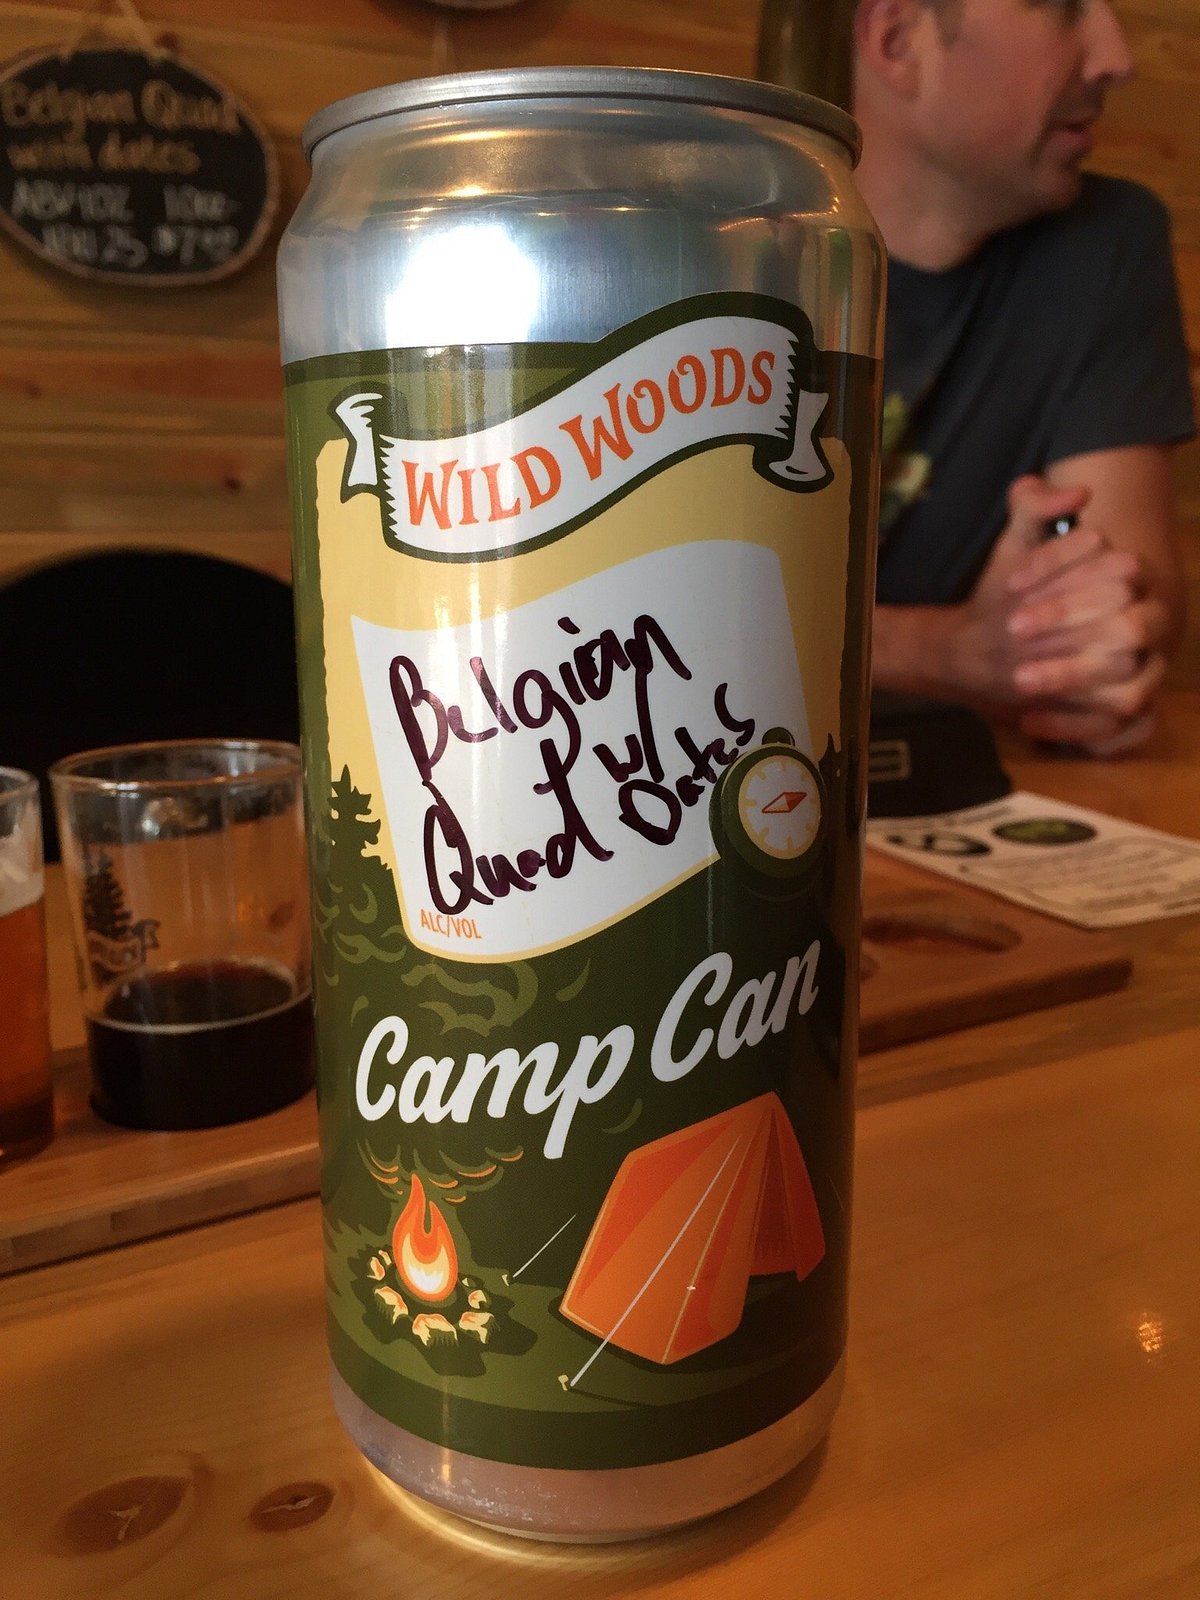 Wild Woods Brewery